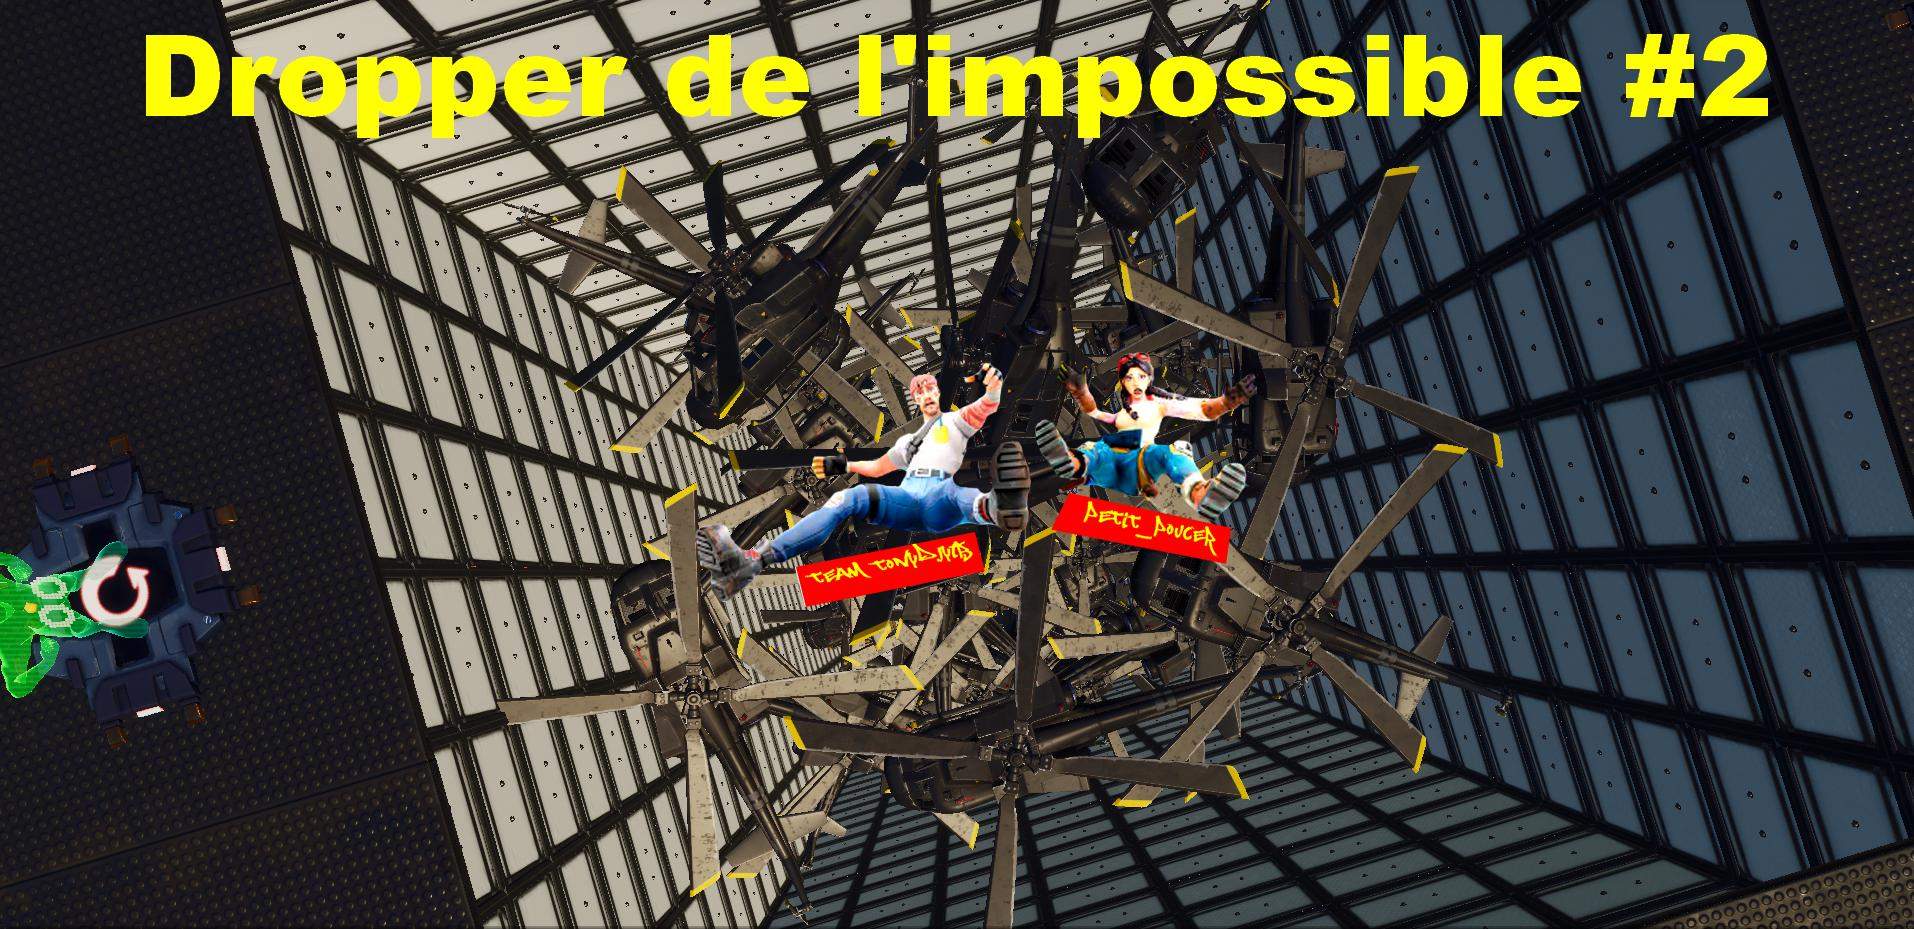 DROPPER DE L'IMPOSSIBLE #2